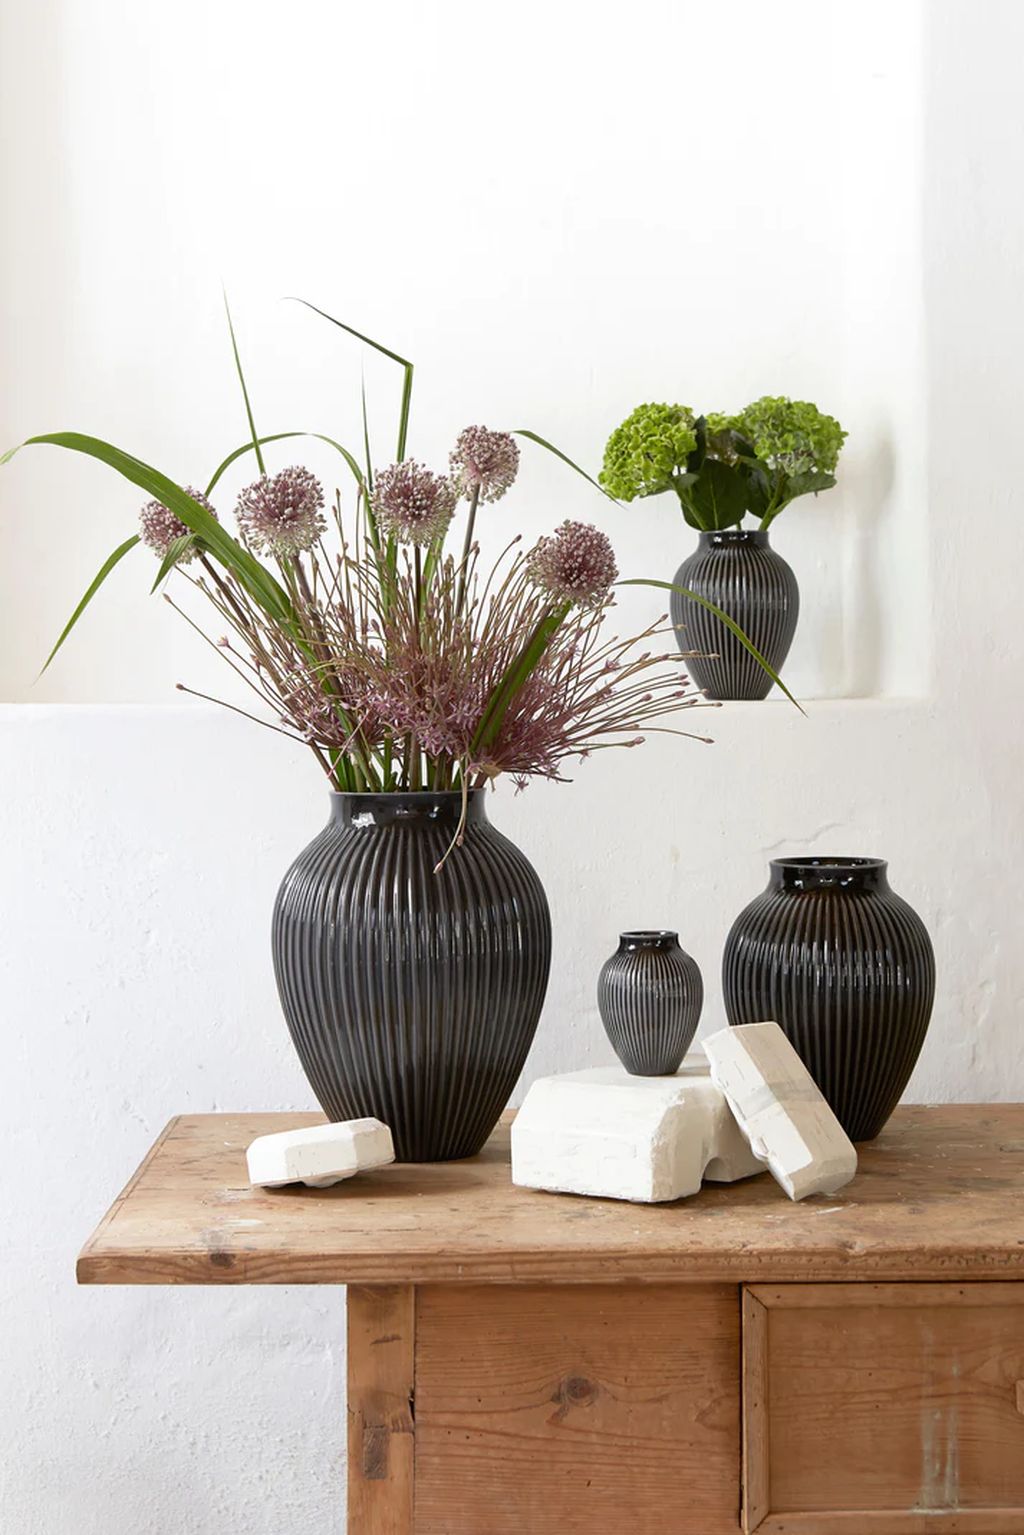 Knabstrup Keramik Vase mit Rillen H 12,5 Cm, Schwarz